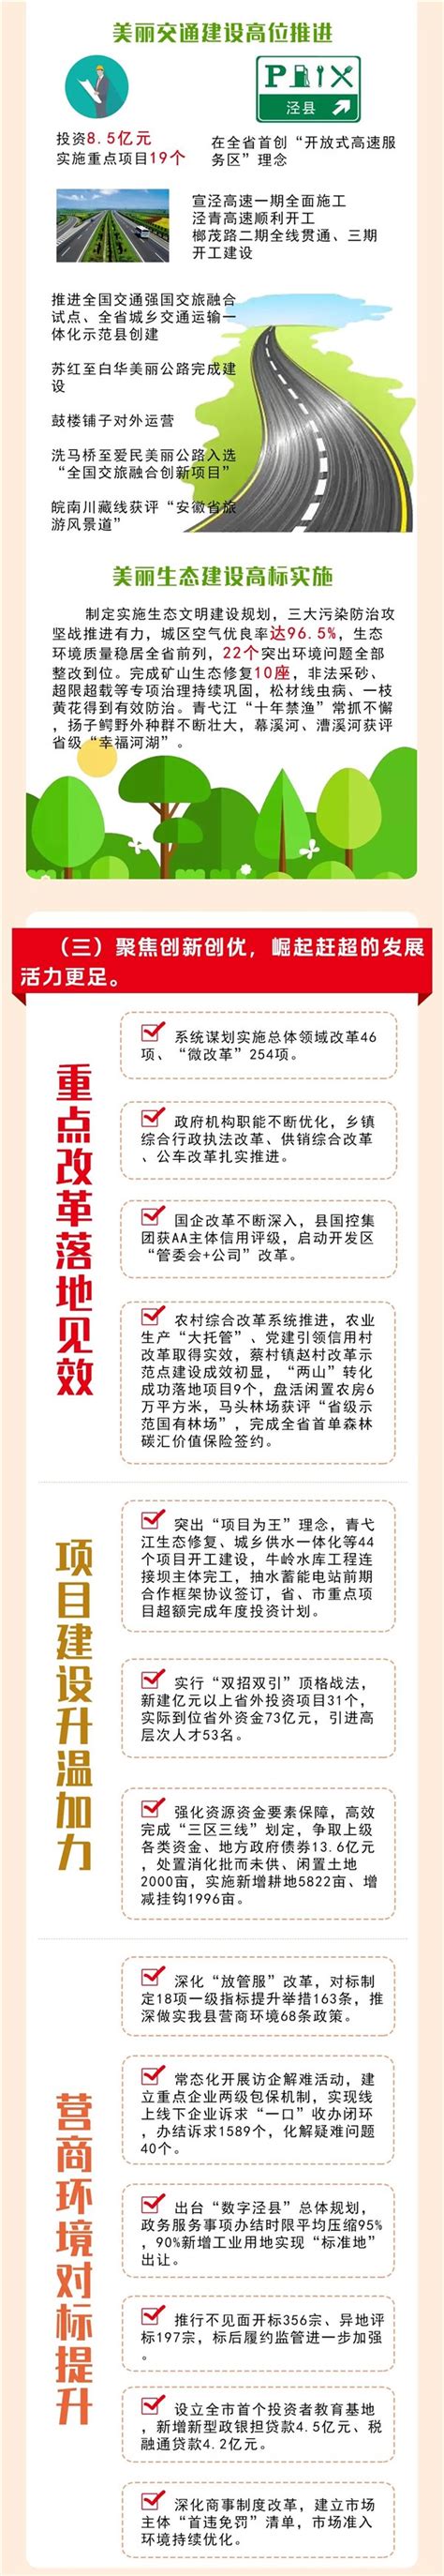 泾县积极开展高素质农民后续跟踪服务工作-泾县人民政府